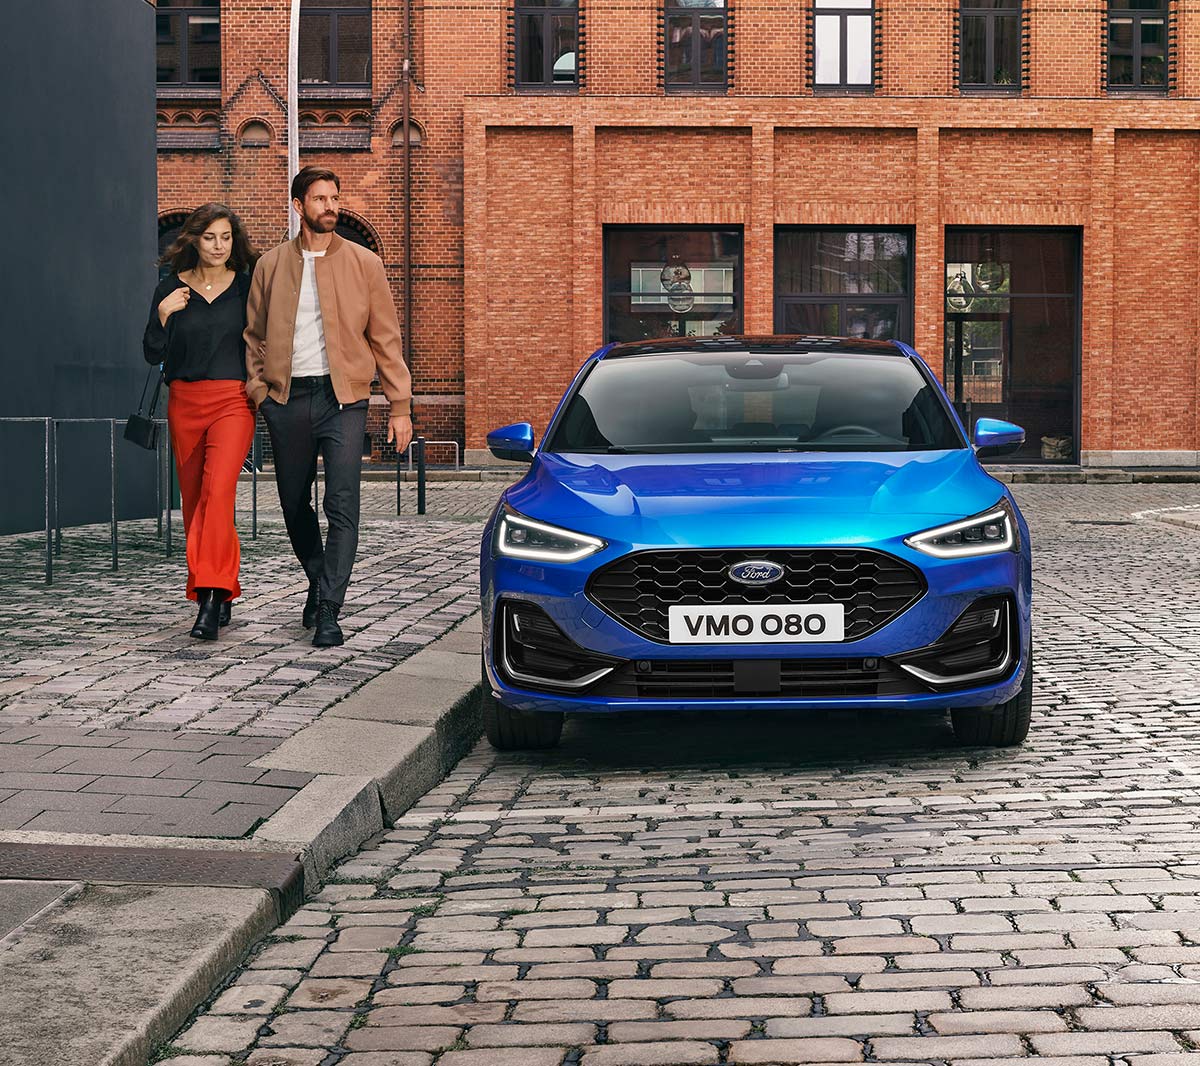 Ford Focus in Blau. Frontansicht, in einer industriellen Gegend parkend. Zwei Personen gehen daneben.